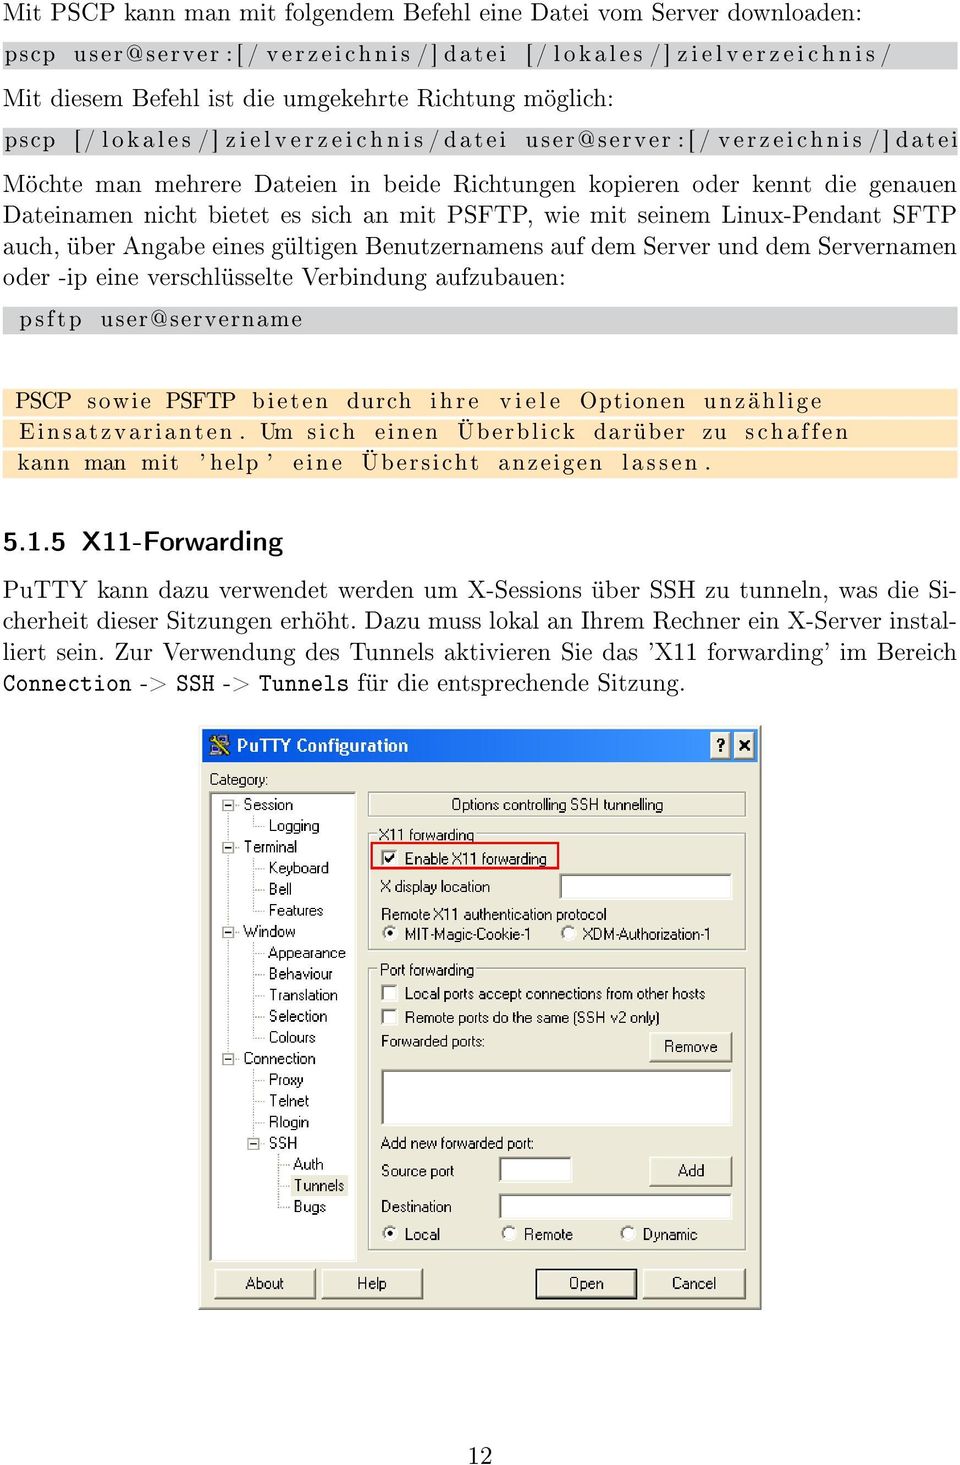 kopieren oder kennt die genauen Dateinamen nicht bietet es sich an mit PSFTP, wie mit seinem Linux-Pendant SFTP auch, über Angabe eines gültigen Benutzernamens auf dem Server und dem Servernamen oder